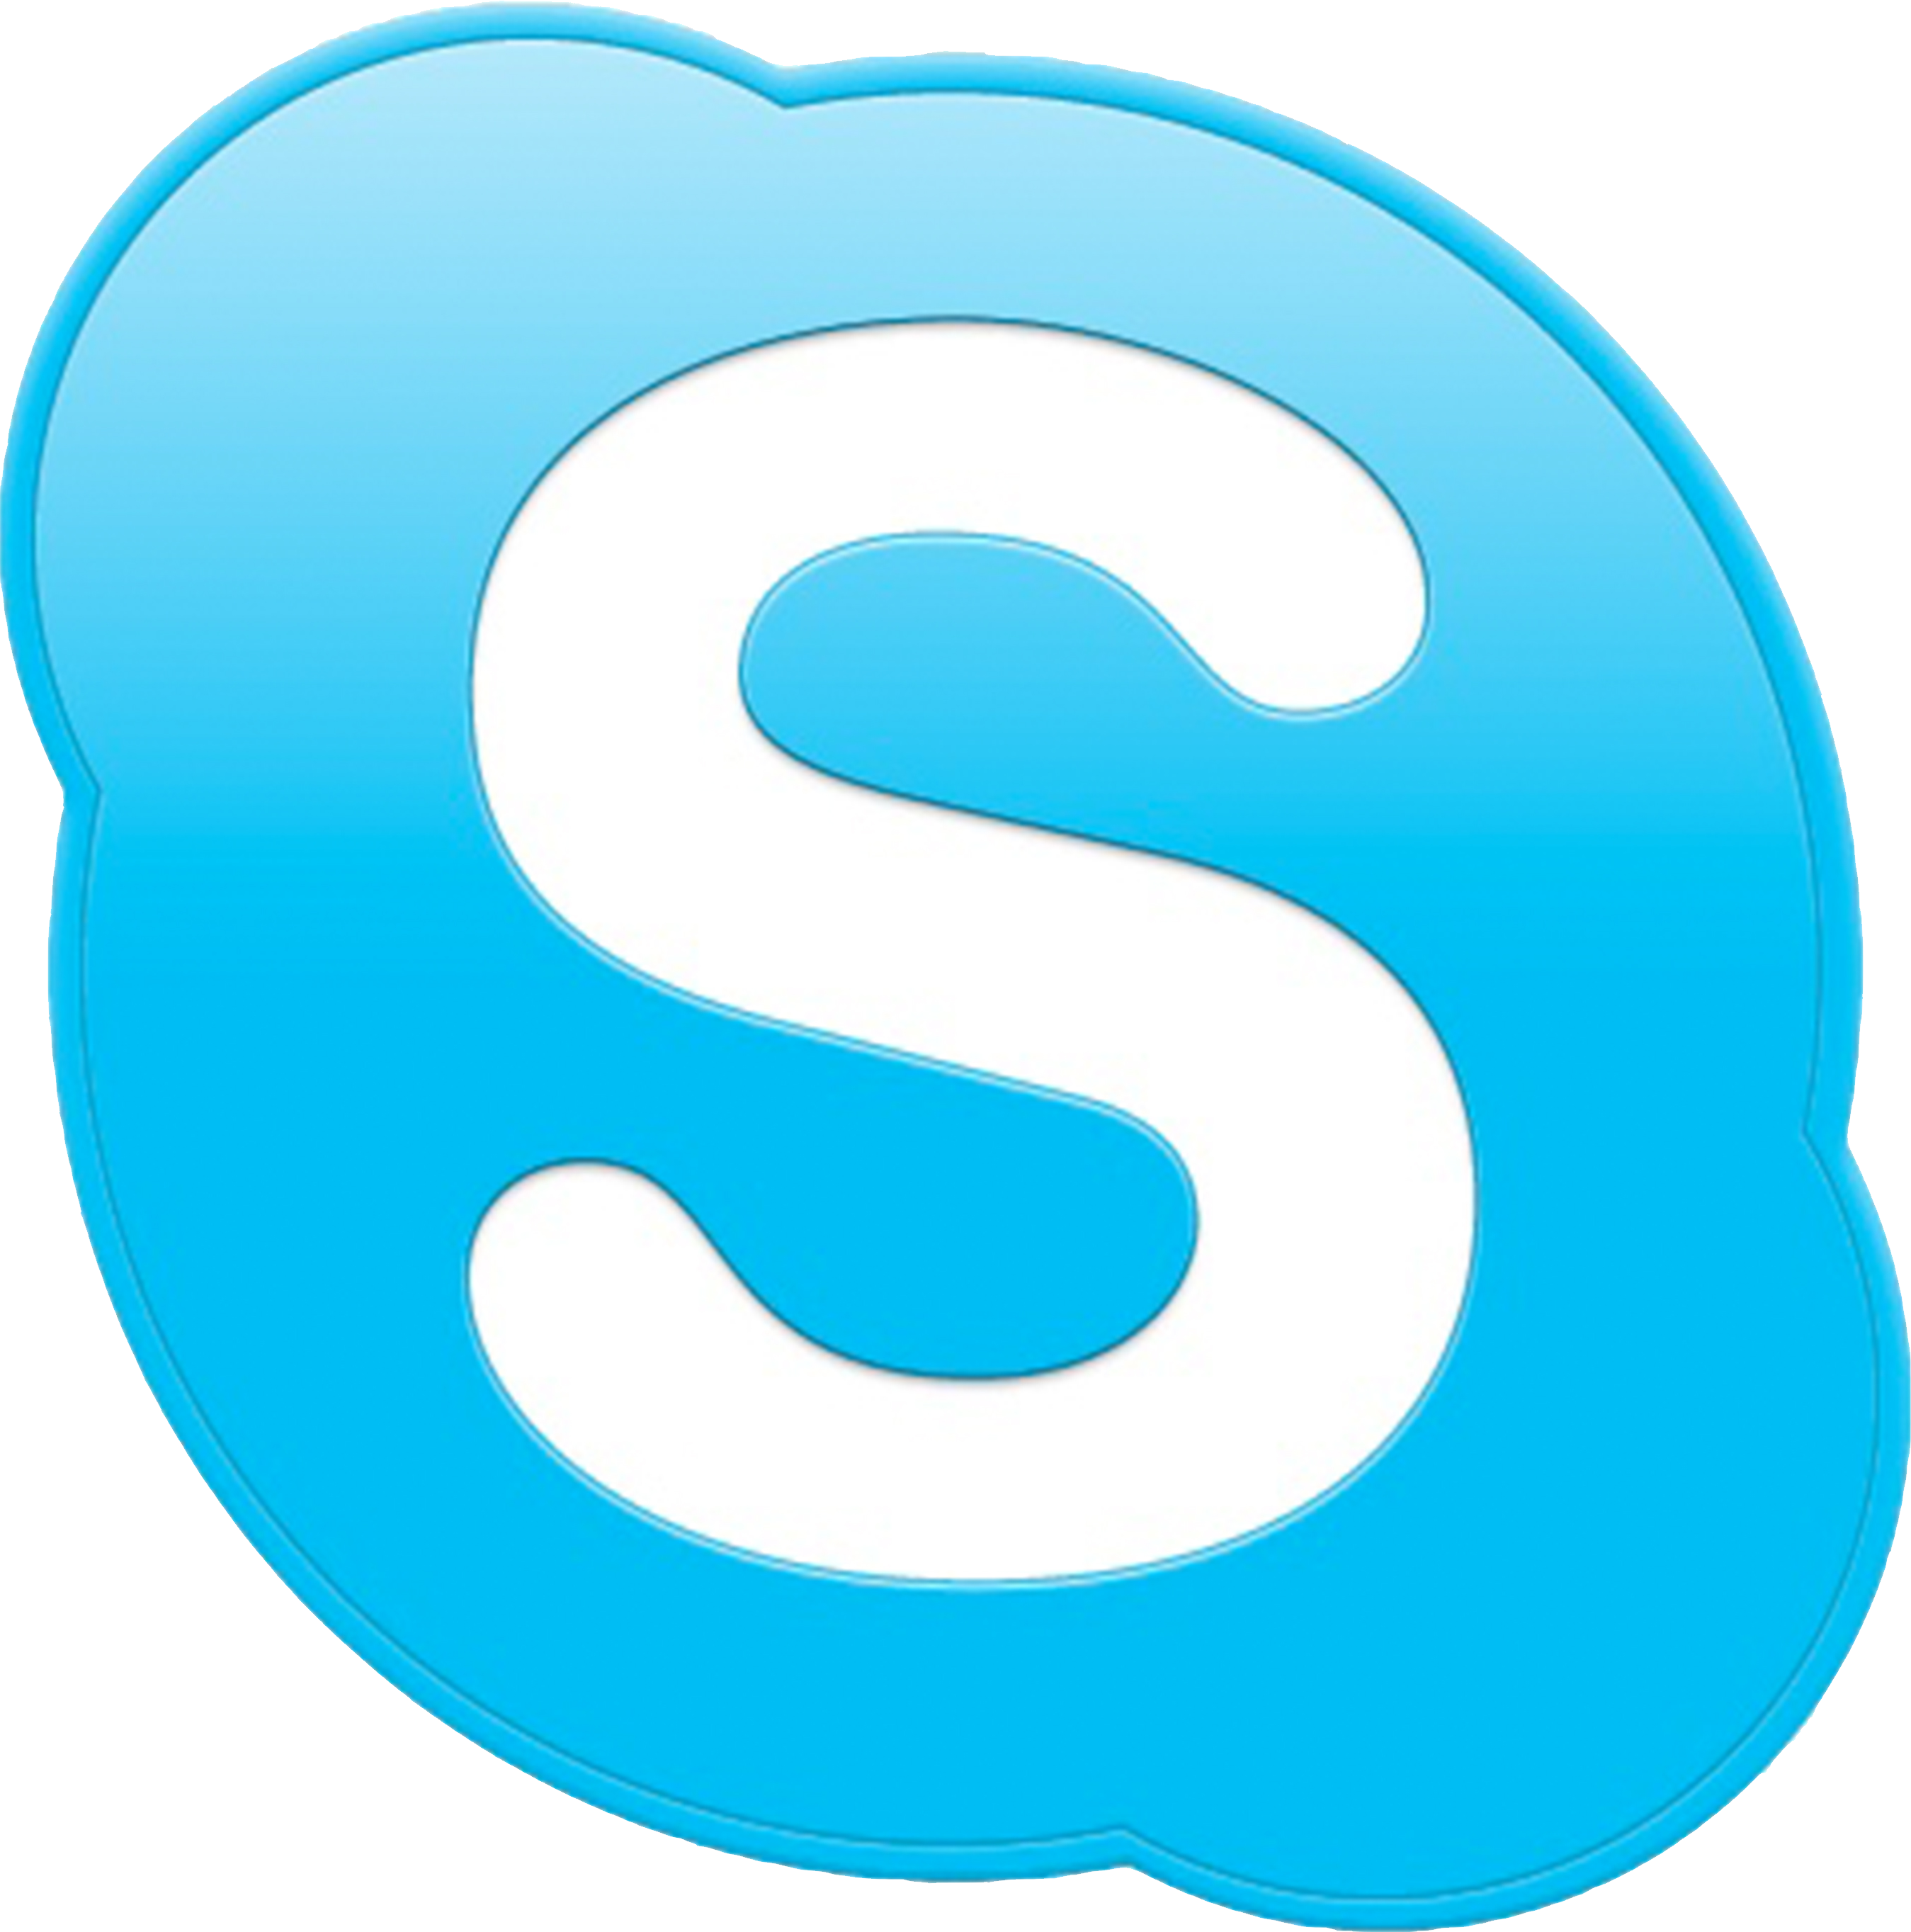 Программа Microsoft Skype